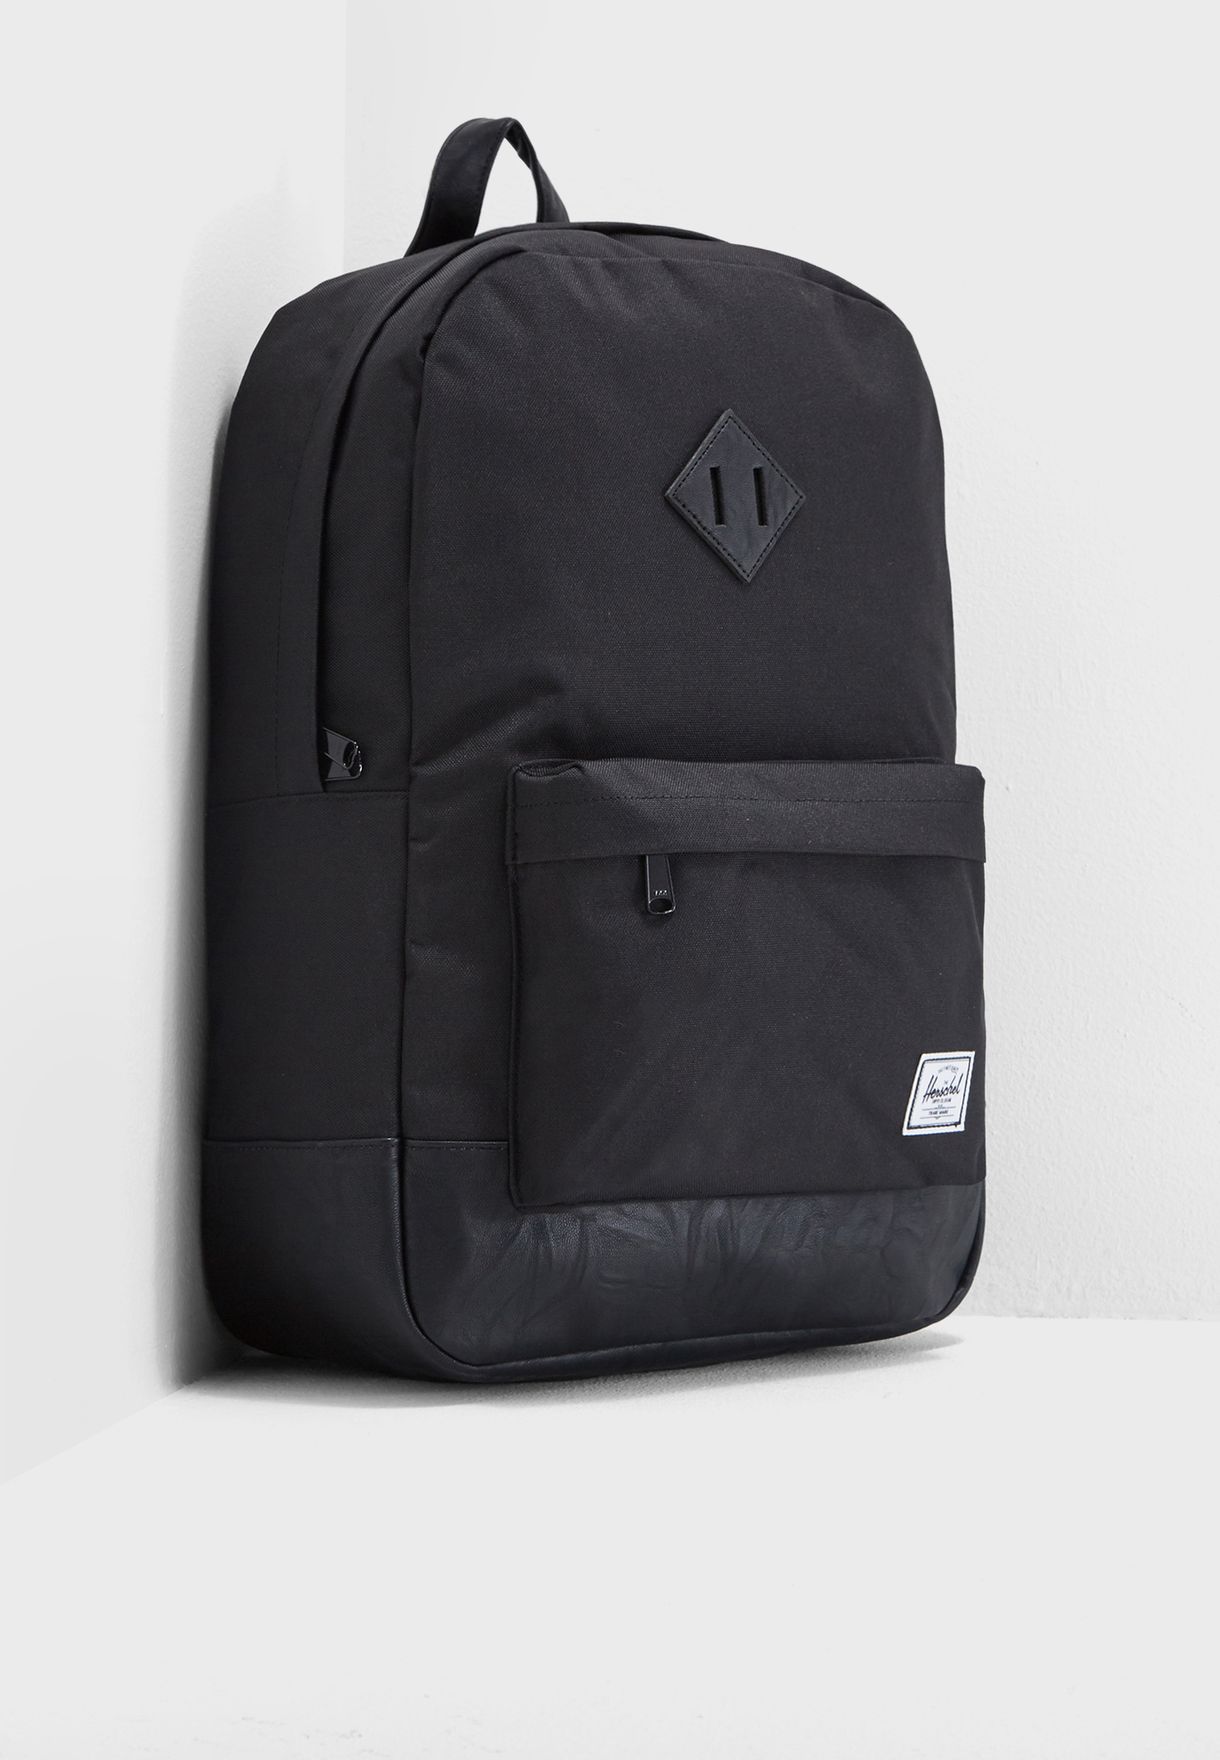 Heritage Backpack 21.5L